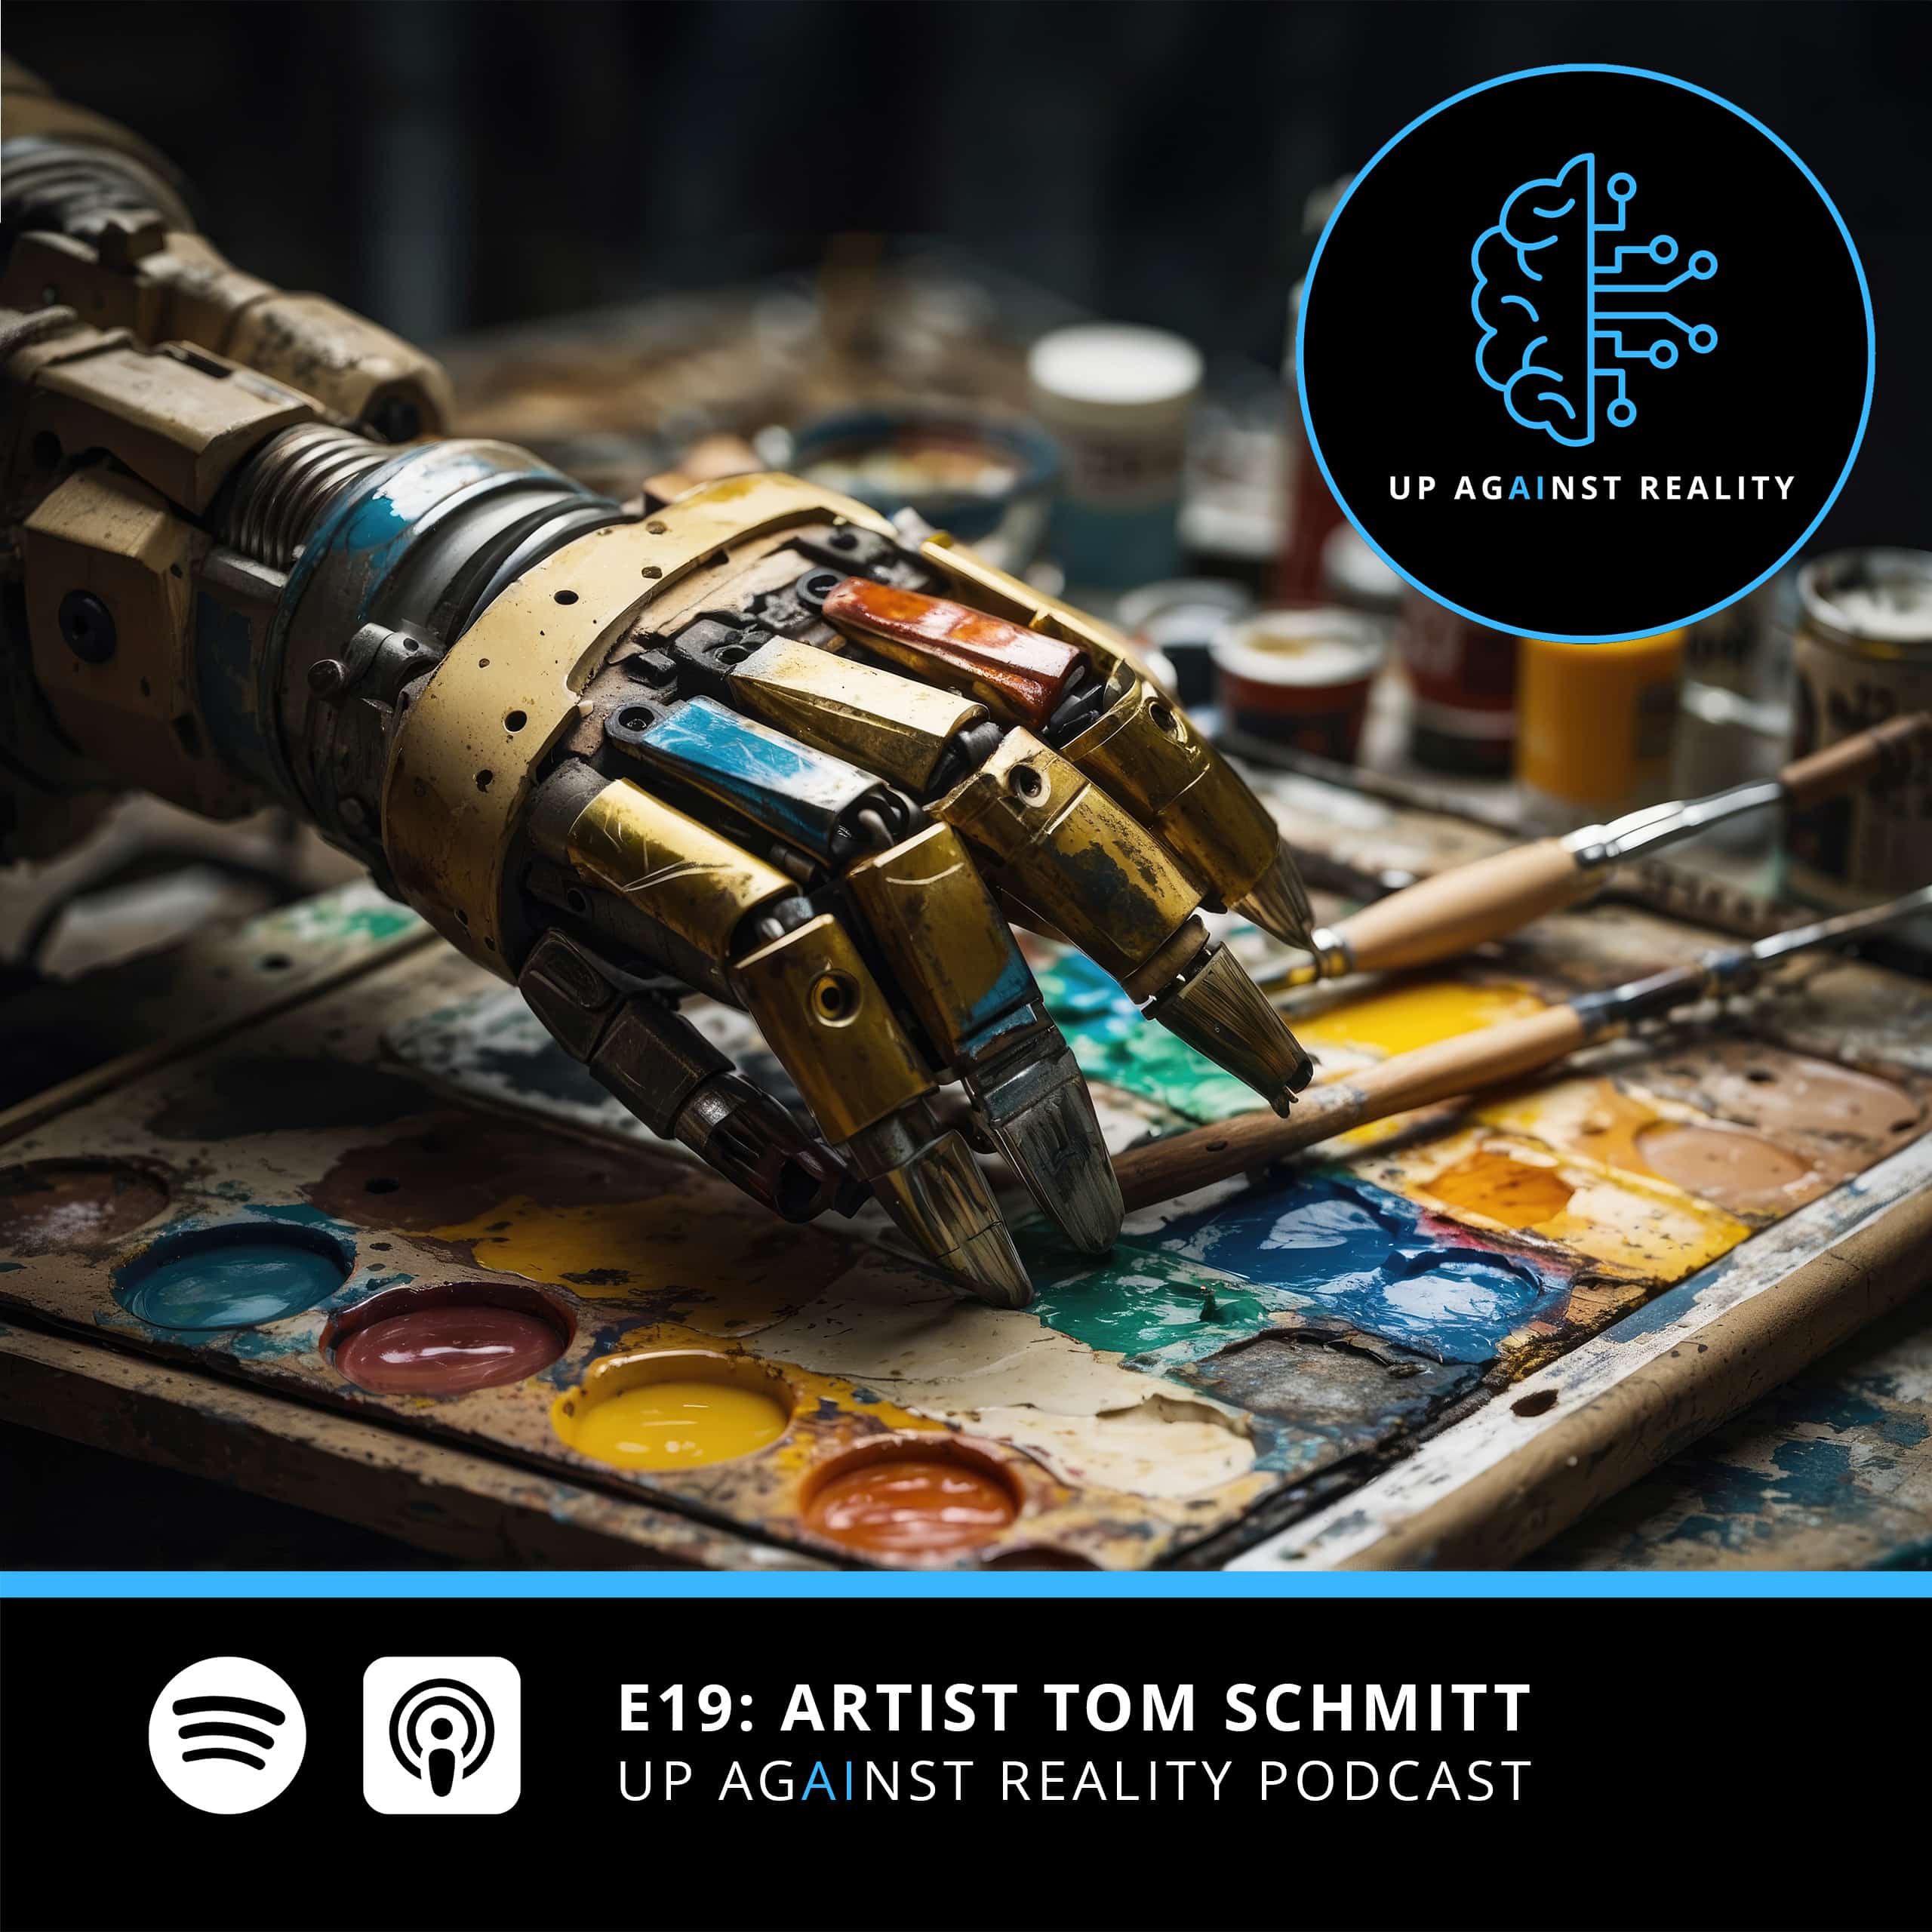 E19: Artist Tom Schmitt